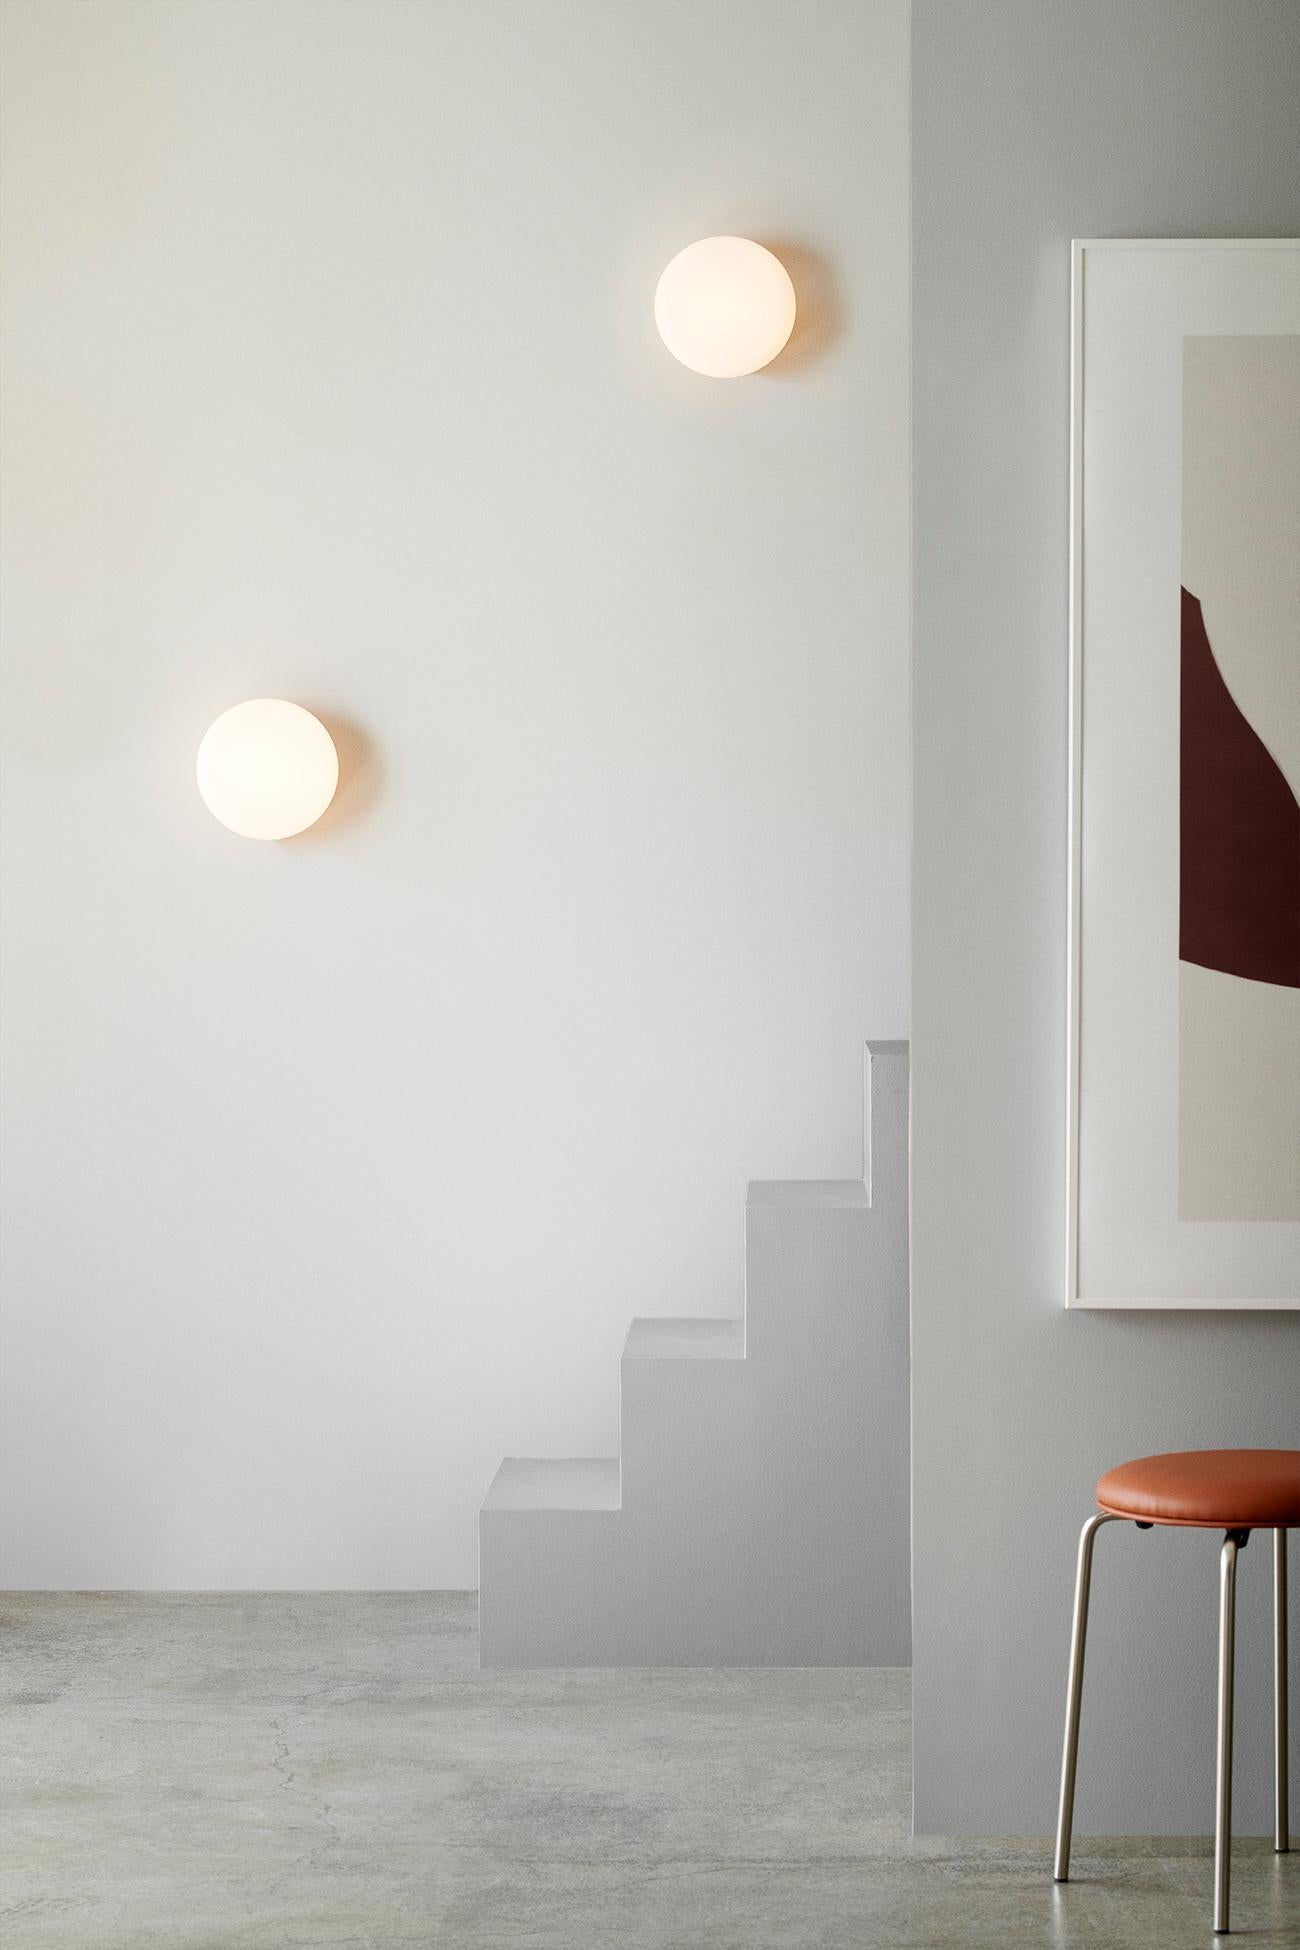 Opa Wall Lamp ist eine kleine Opallampe, die sowohl für die Wand als auch für die Decke geeignet ist. Das Ziel war es, eine saubere und wirkungsvolle Glasleuchte zu schaffen, die in kleinen Räumen wie Fluren, Eingangsbereichen oder neben Bildern